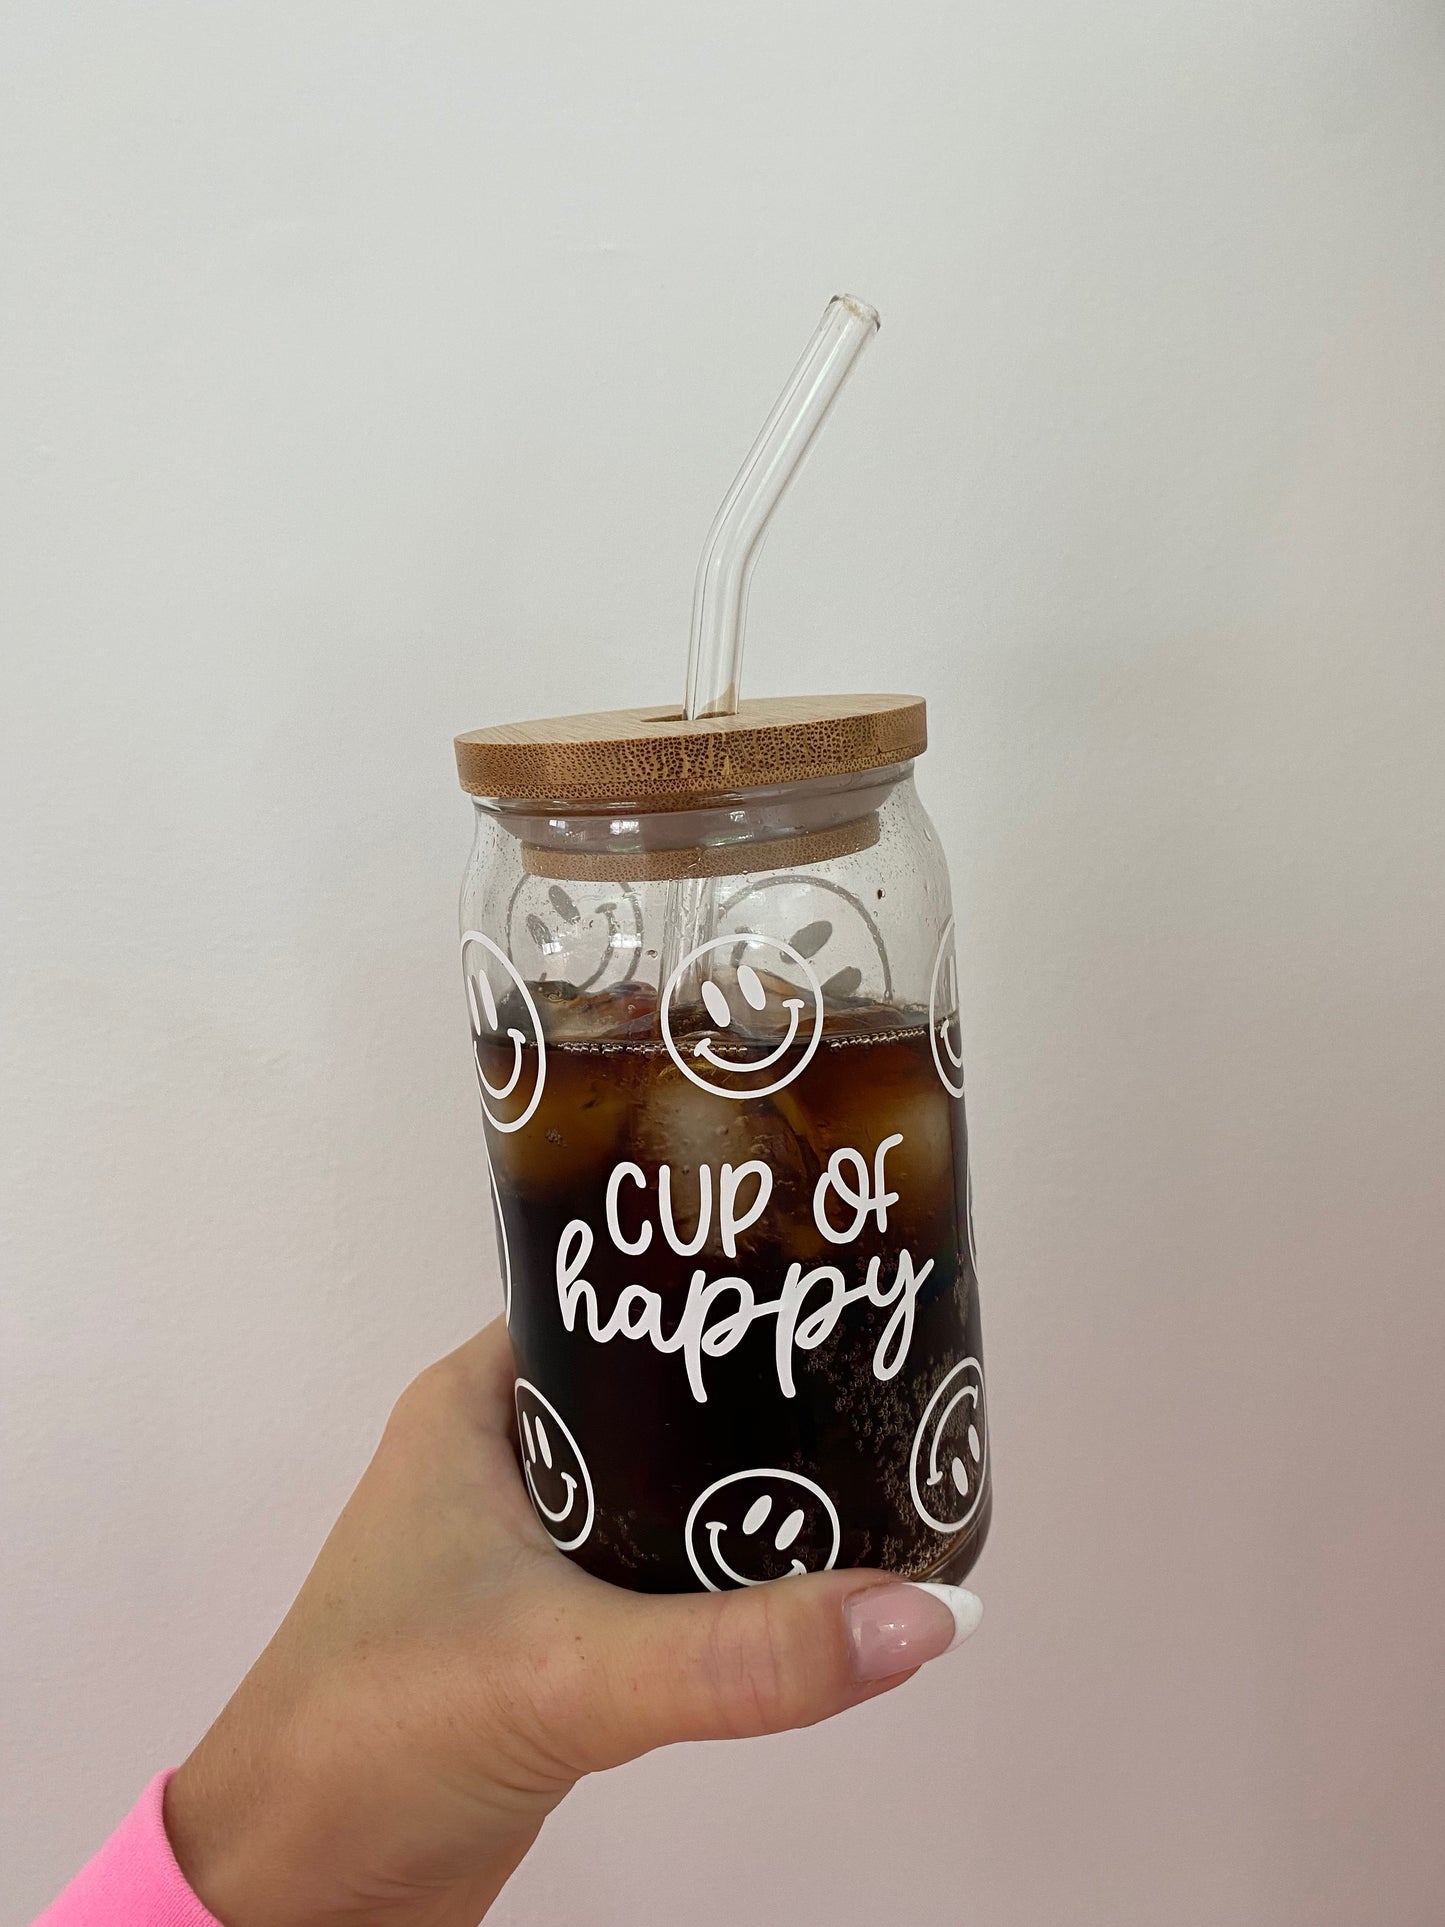 Iced coffee in jar, mug glass cup on